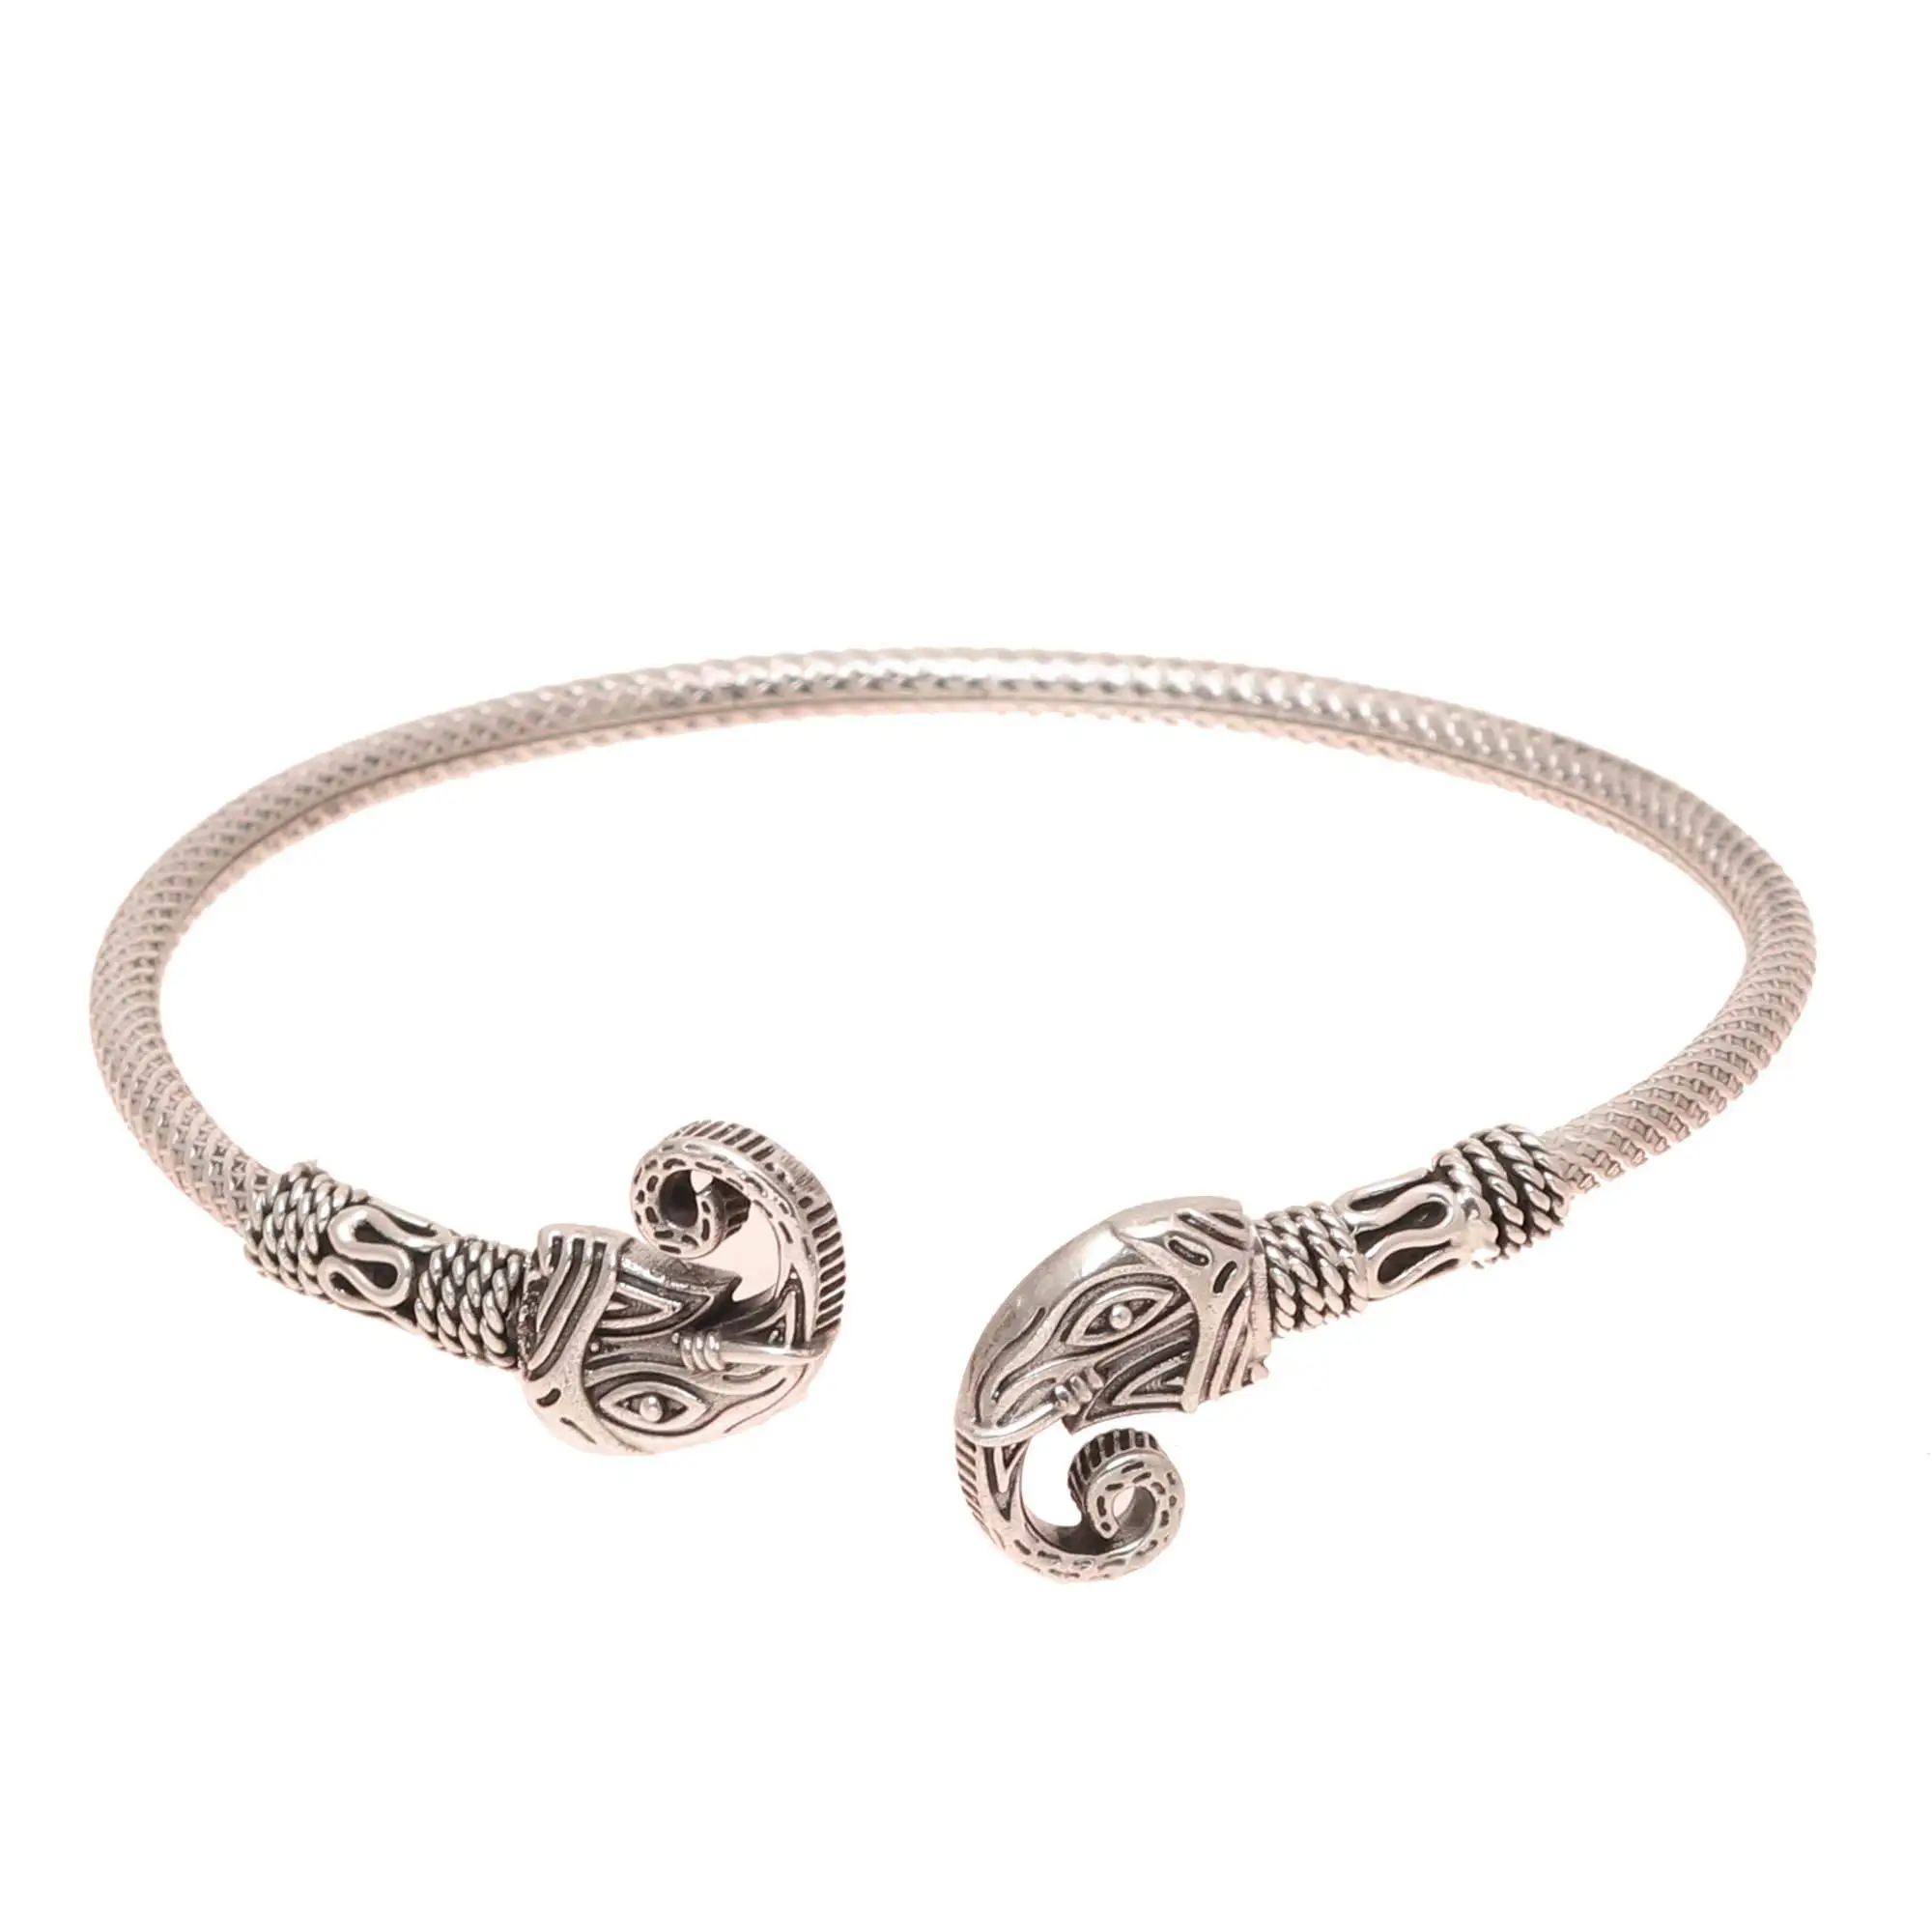 Buy IndianShelf Handmade Beaded Bracelet Sterling Silver Silver Bracelet  for Women Girls 000 cm Silver  Black at Amazonin